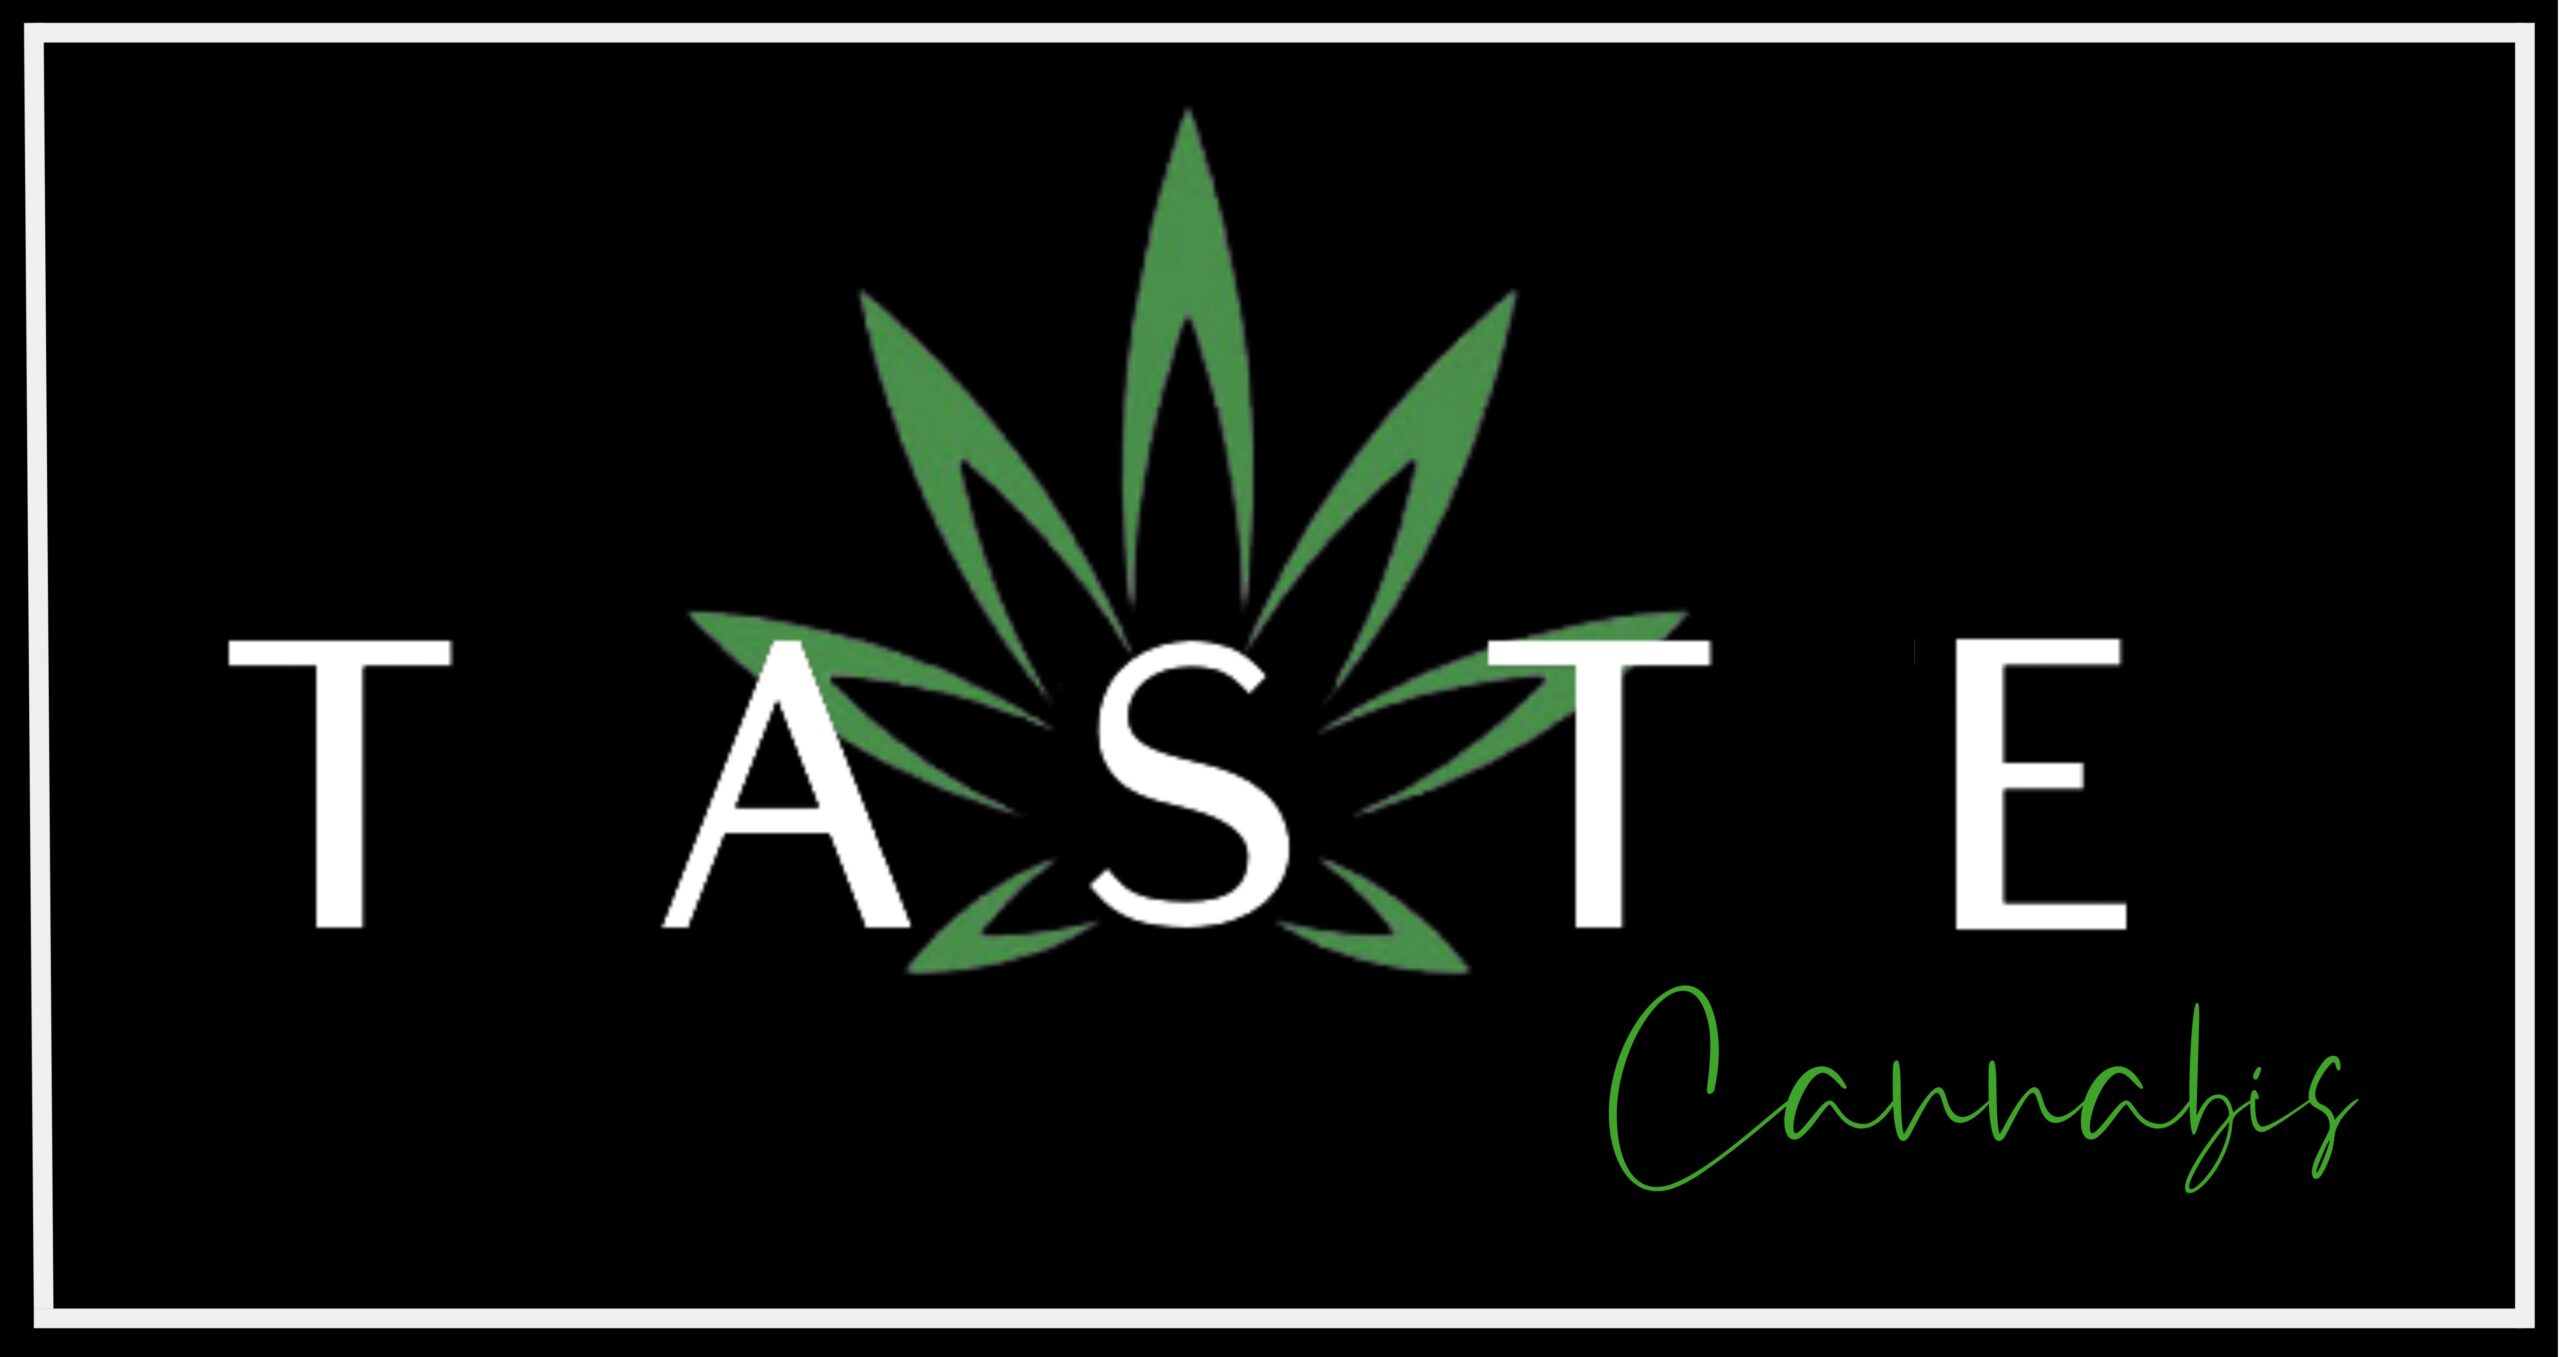 Taste cannabis